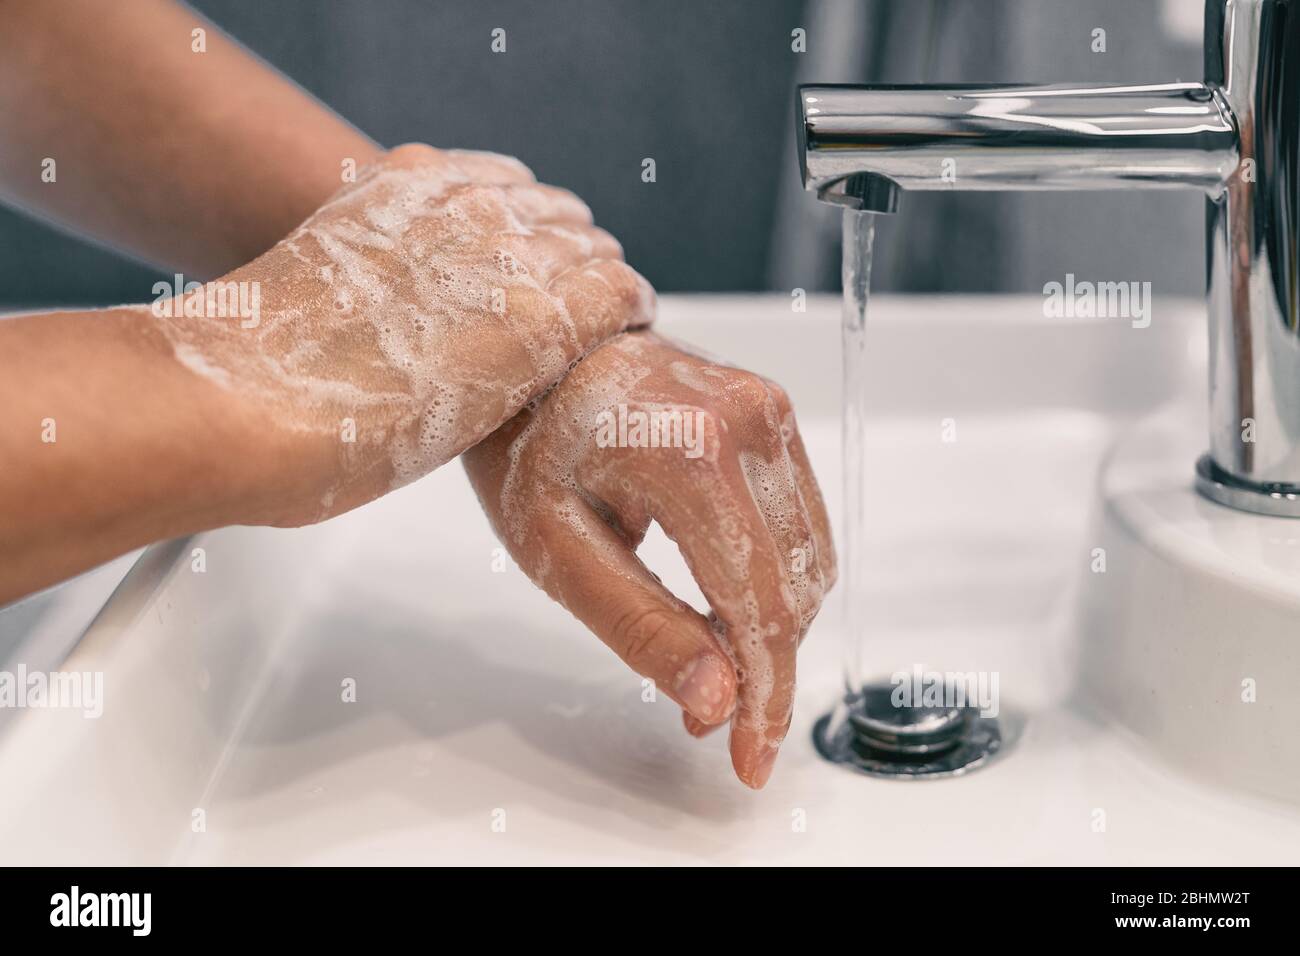 Händewaschen persönliche Hygiene Frau Hände waschen Reiben Seife für 20 Sekunden nach den Schritten, Reinigung Handgelenke und Spülen unter Wasser zu Hause Bad. COVID-19 Infektionsprävention Händewaschen. Stockfoto